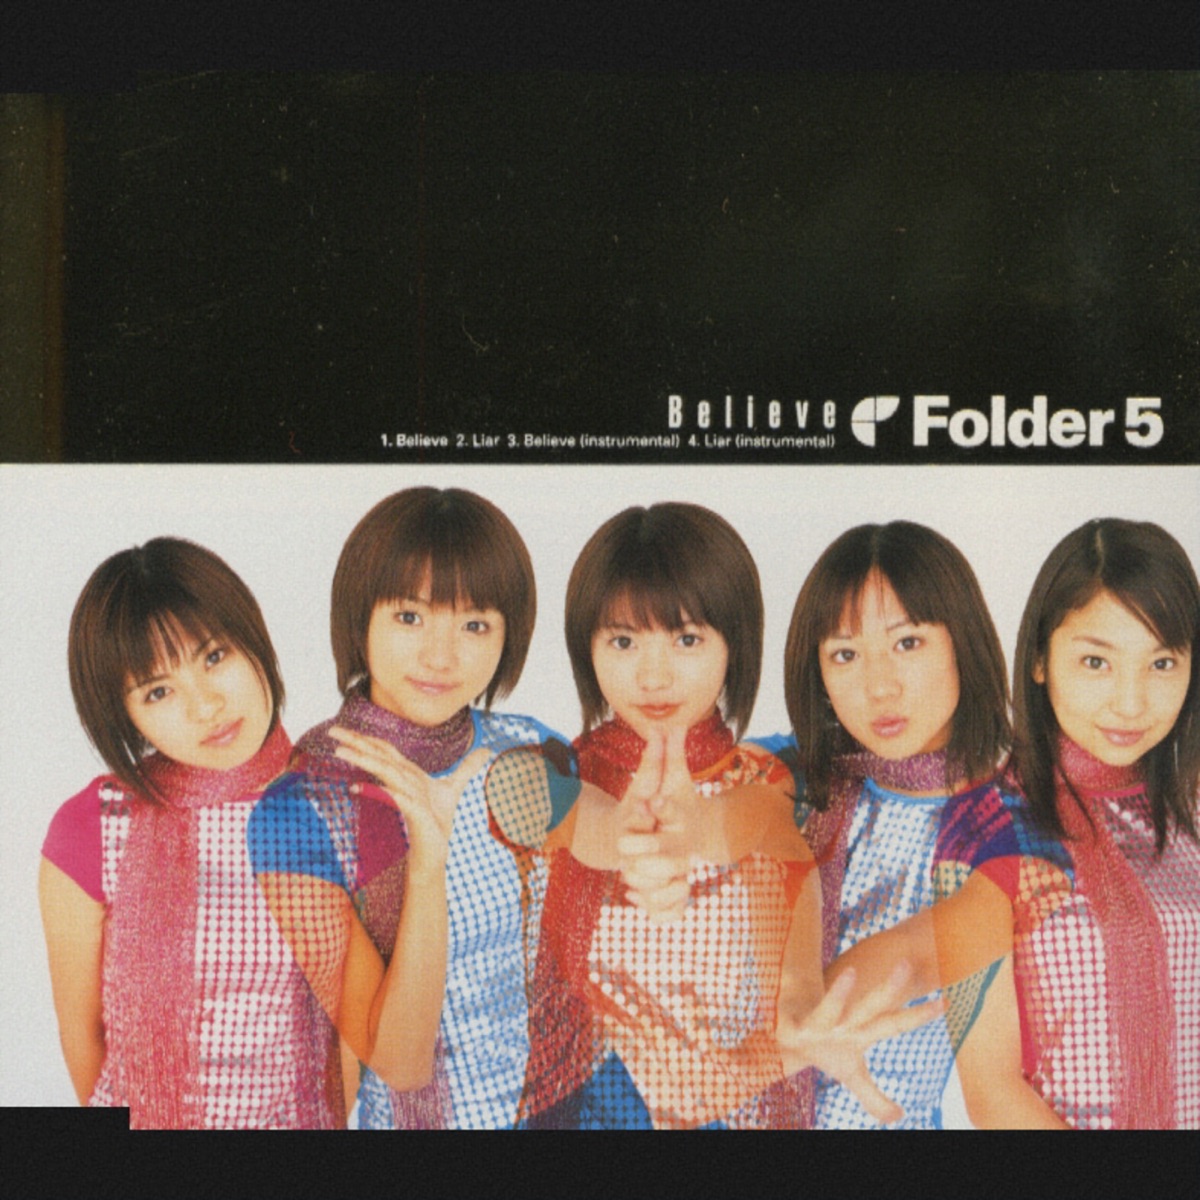 『Folder5 - Believe』収録の『Believe』ジャケット